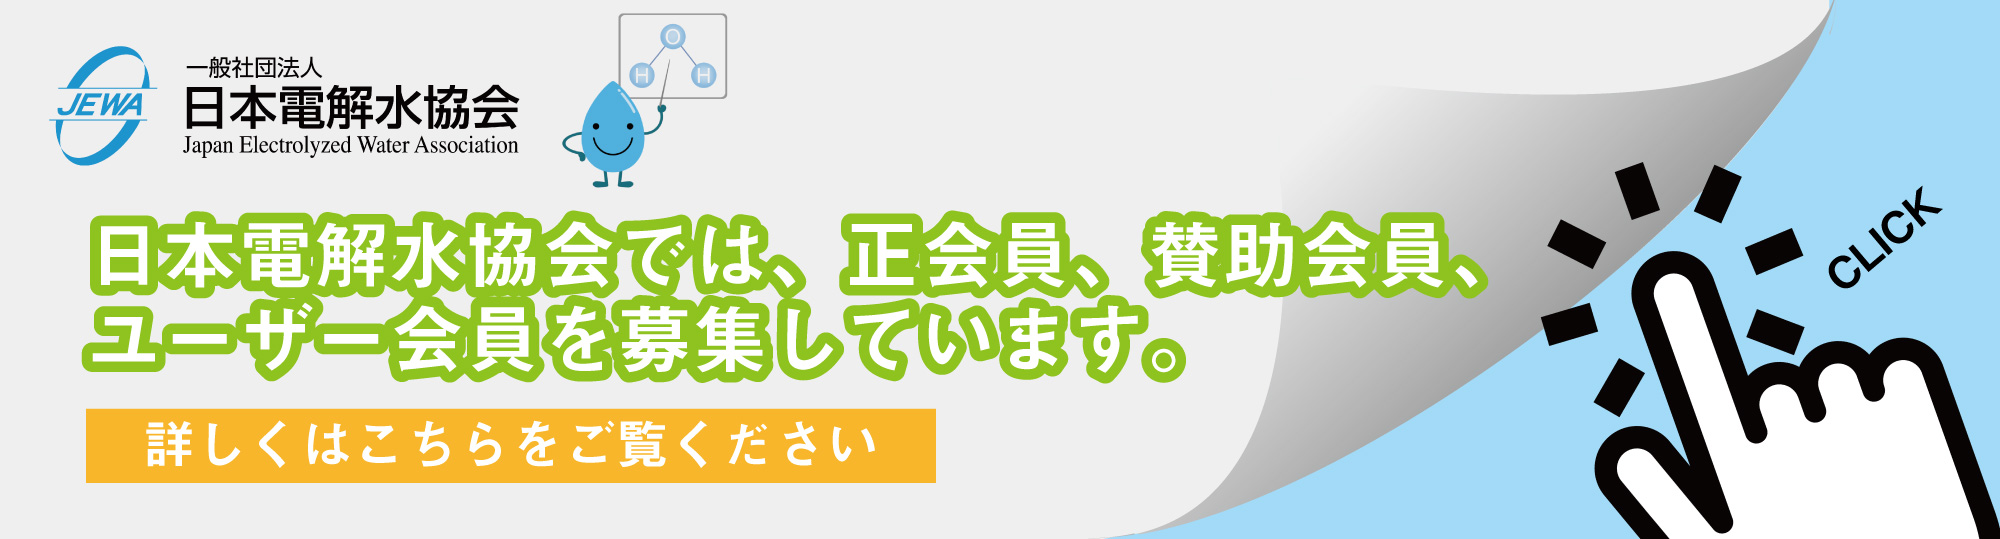 日本電解水協会入会、会員募集